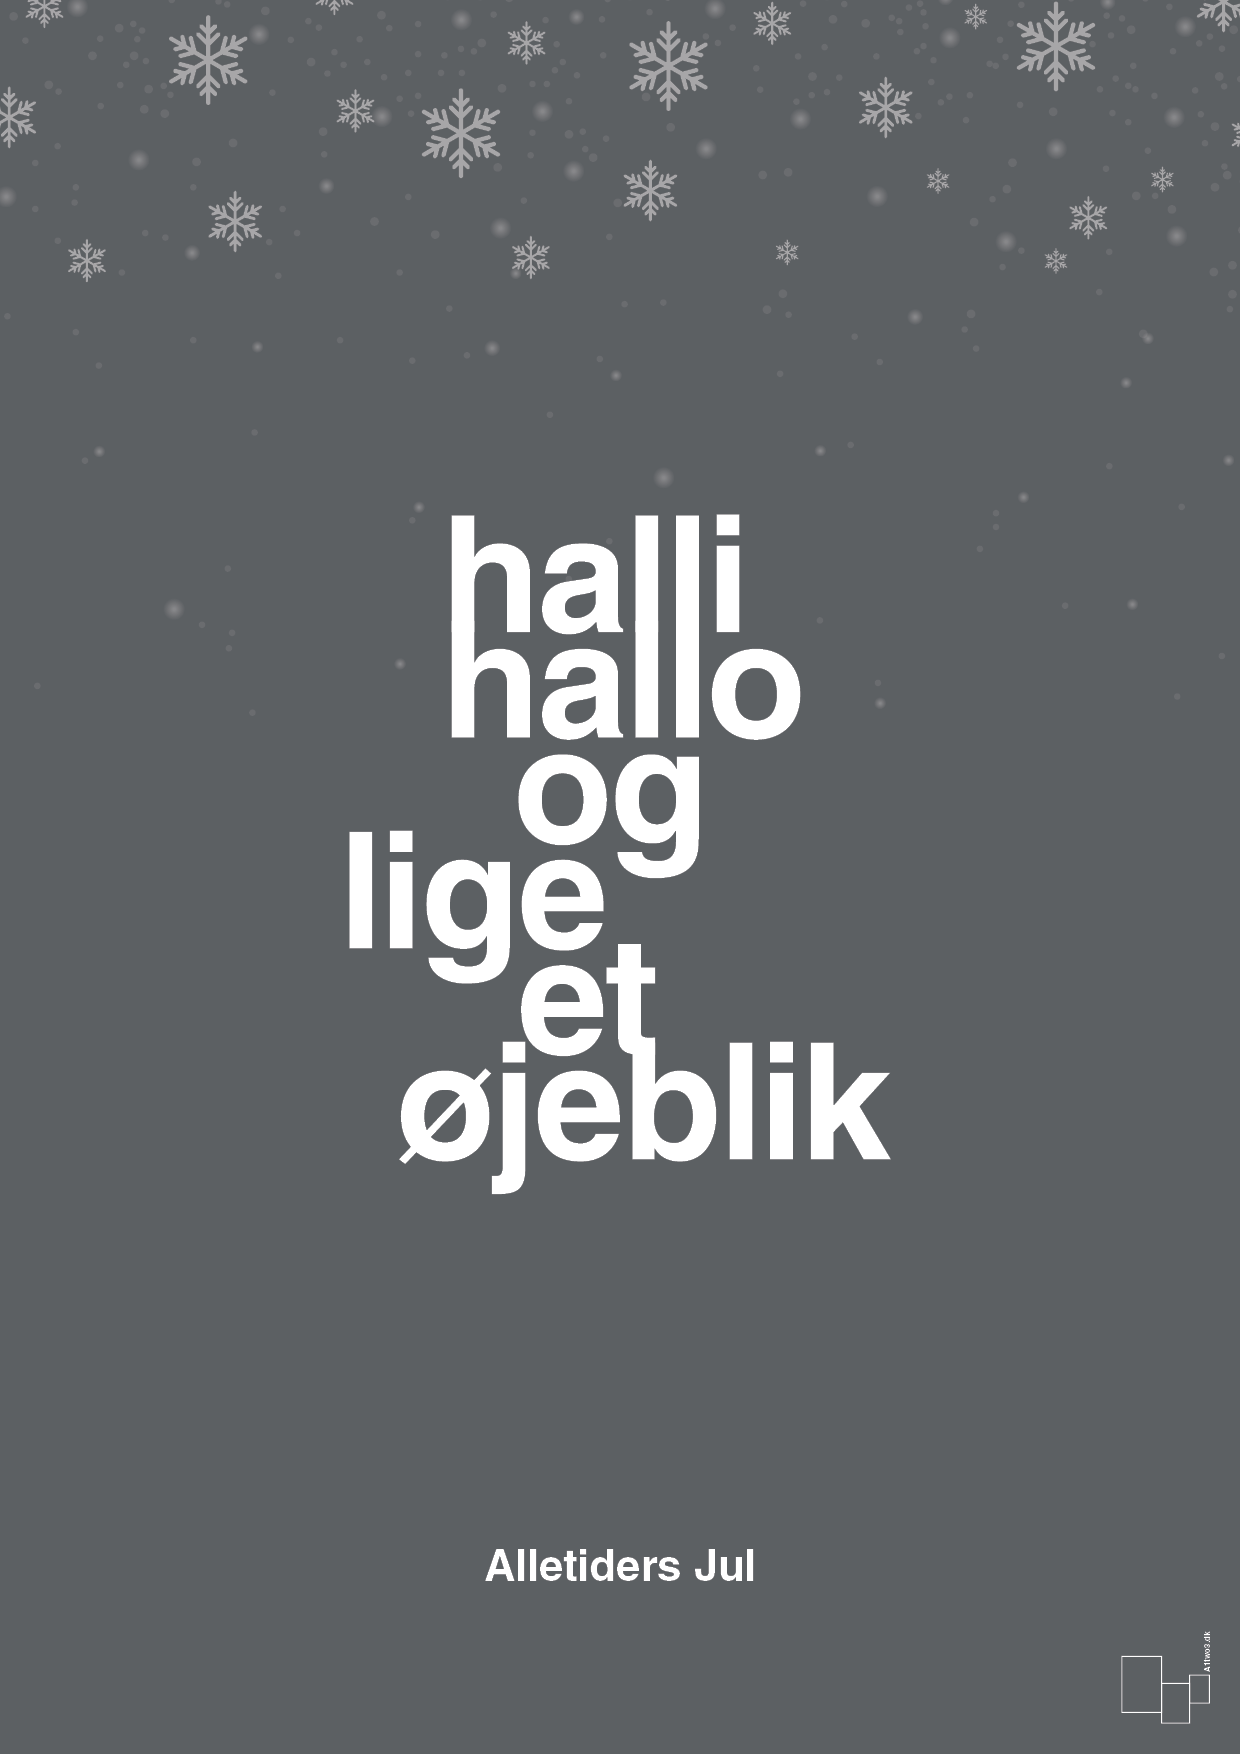 halli hallo og lige et øjeblik - Plakat med Begivenheder i Graphic Charcoal